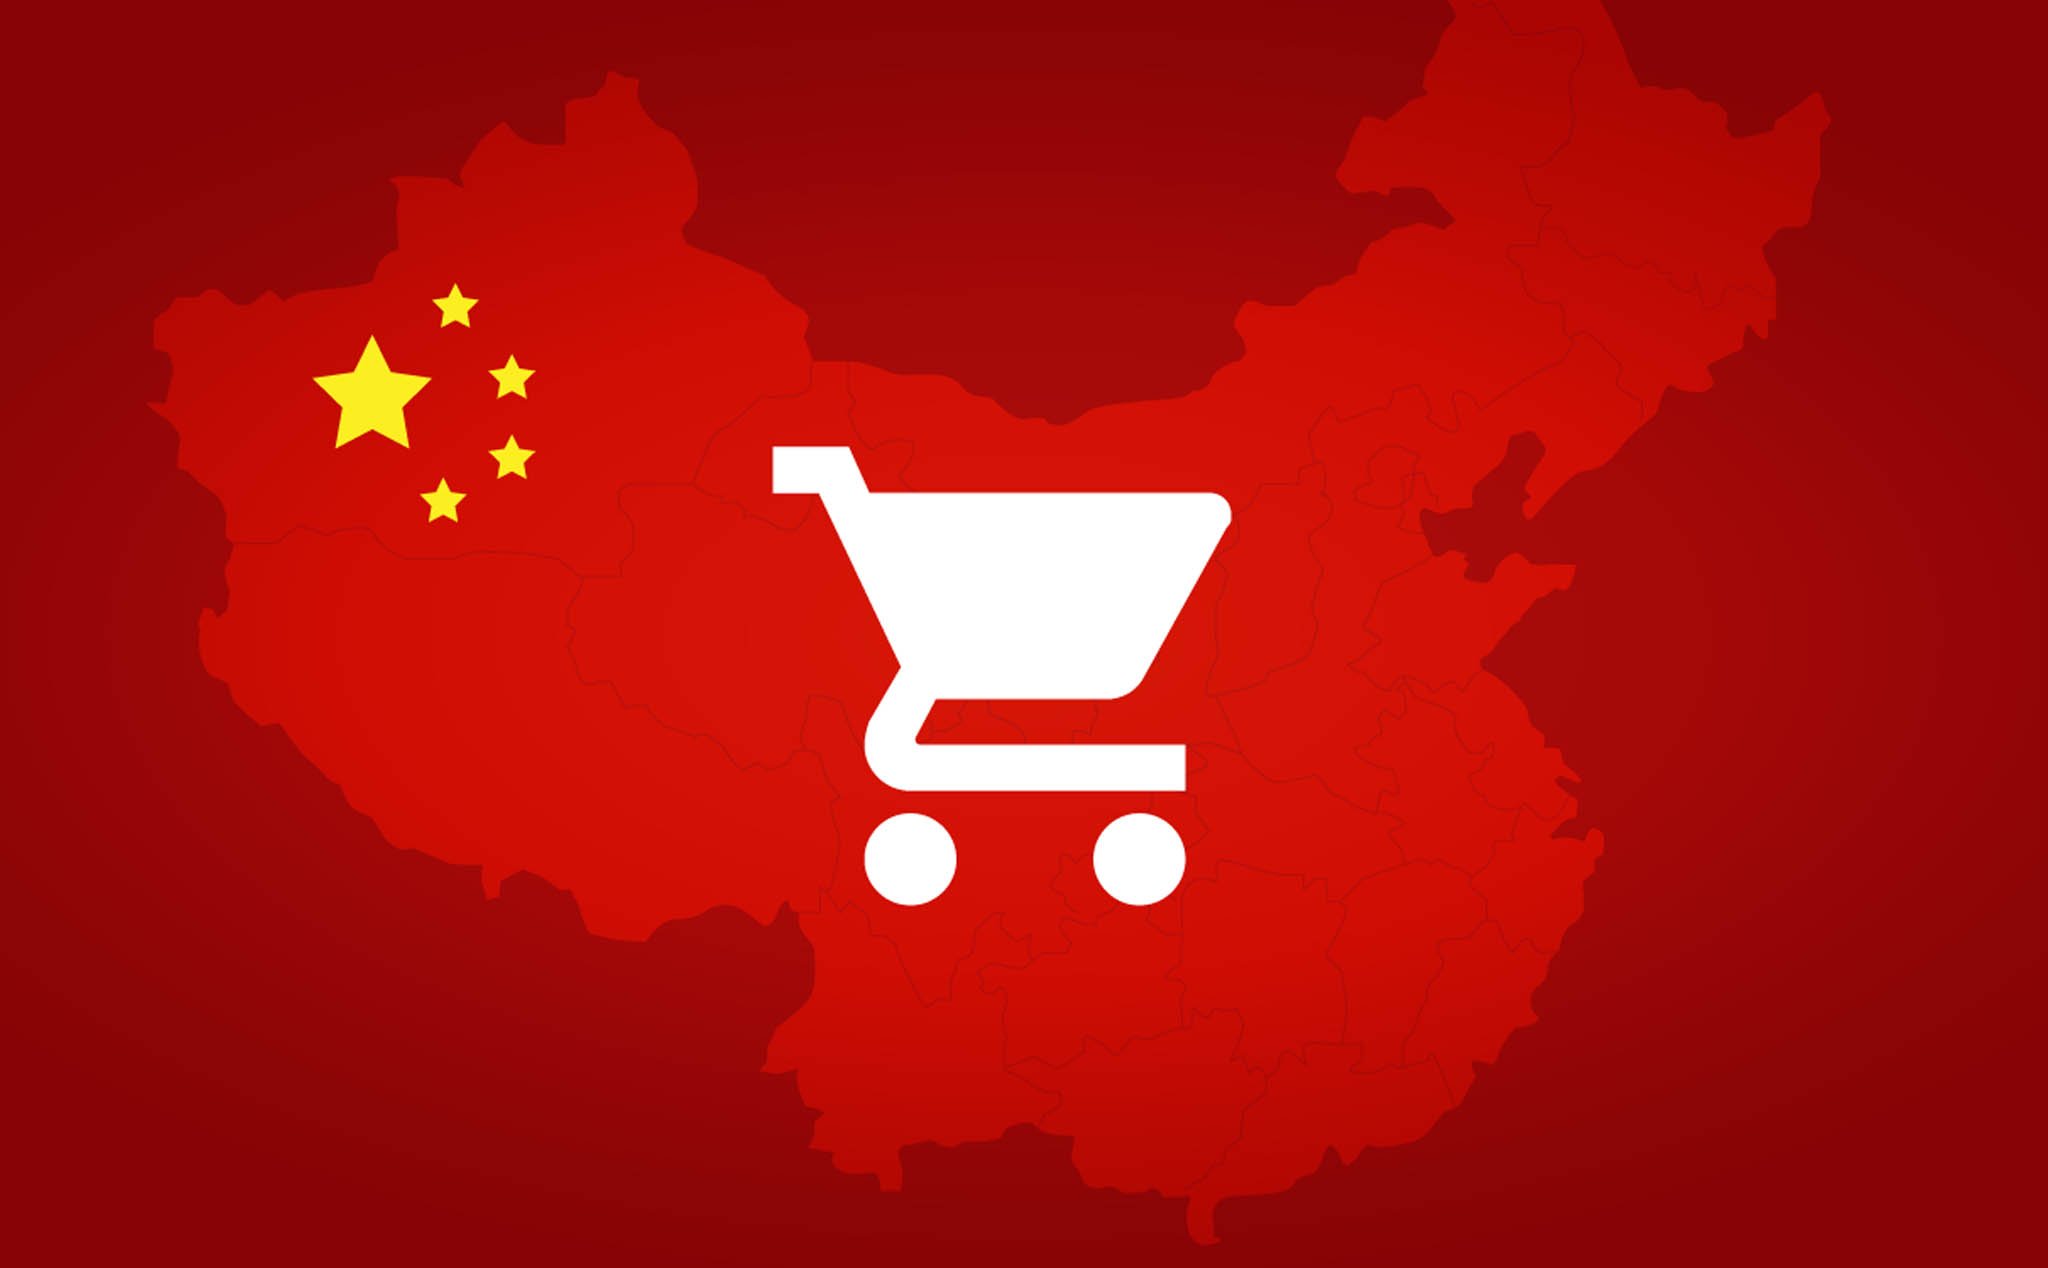 Thương mại điện tử đang bù khuyết cho kinh tế Trung Quốc, nhưng cũng là nguy cơ gây khủng hoảng